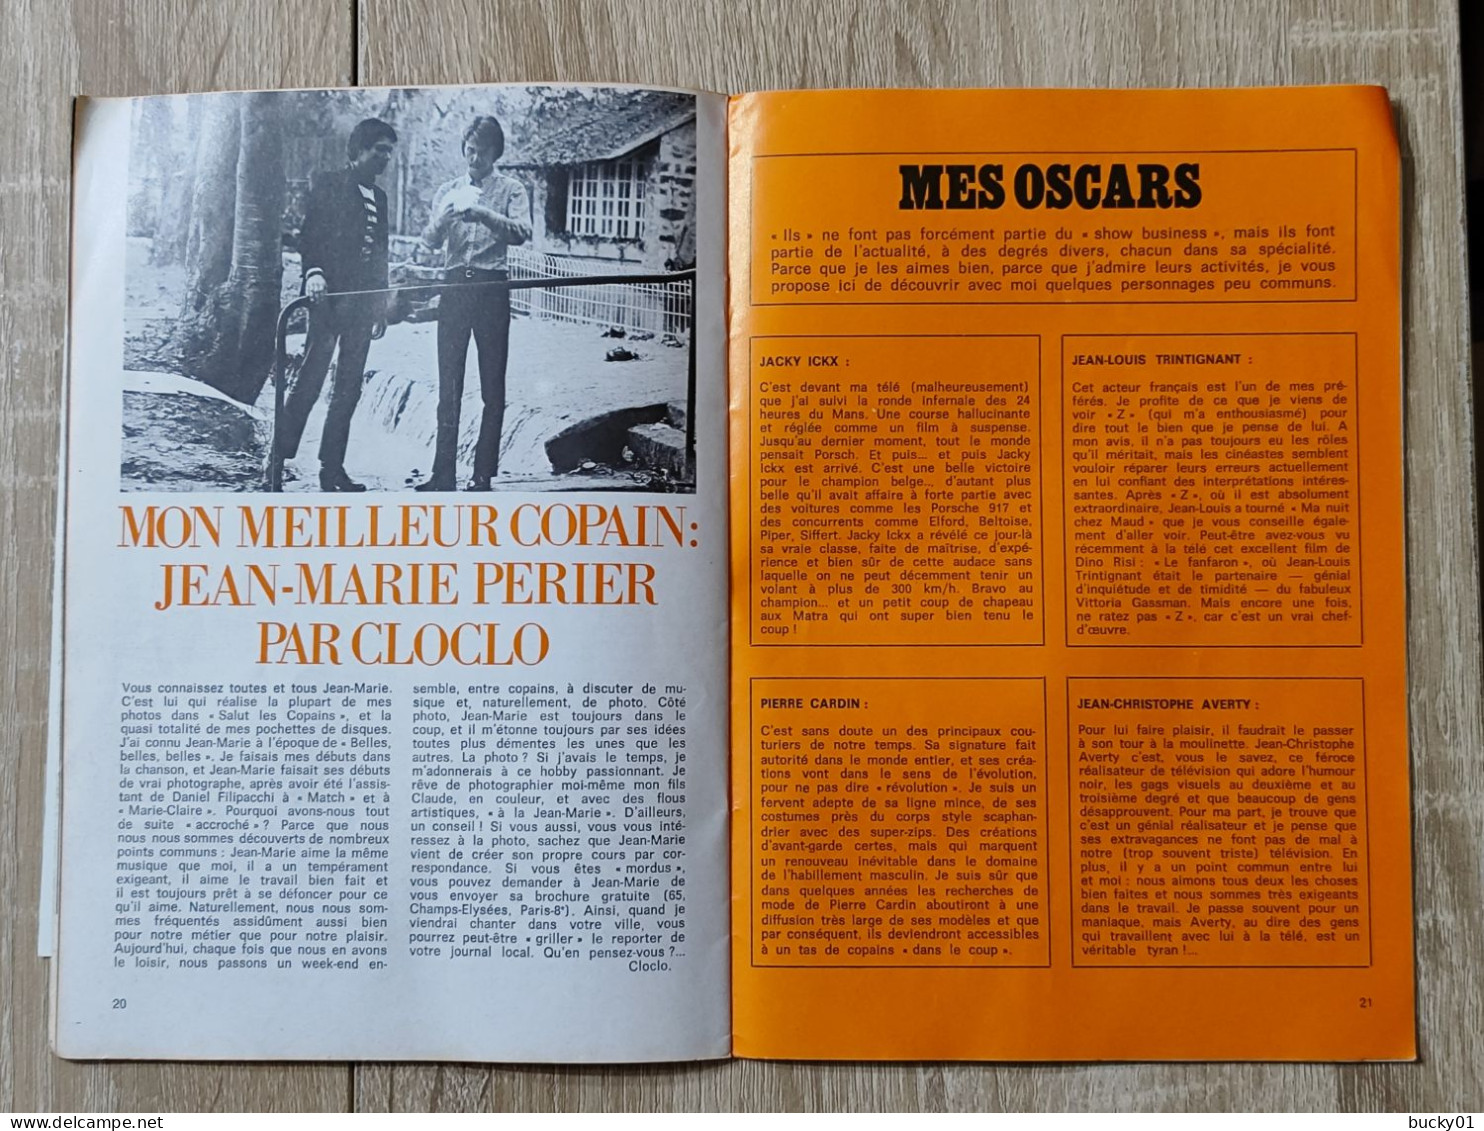 TRES RARE - FLECHE N°3 - LE JOURNAL DE CLAUDE FRANCOIS - 1969 - Musica